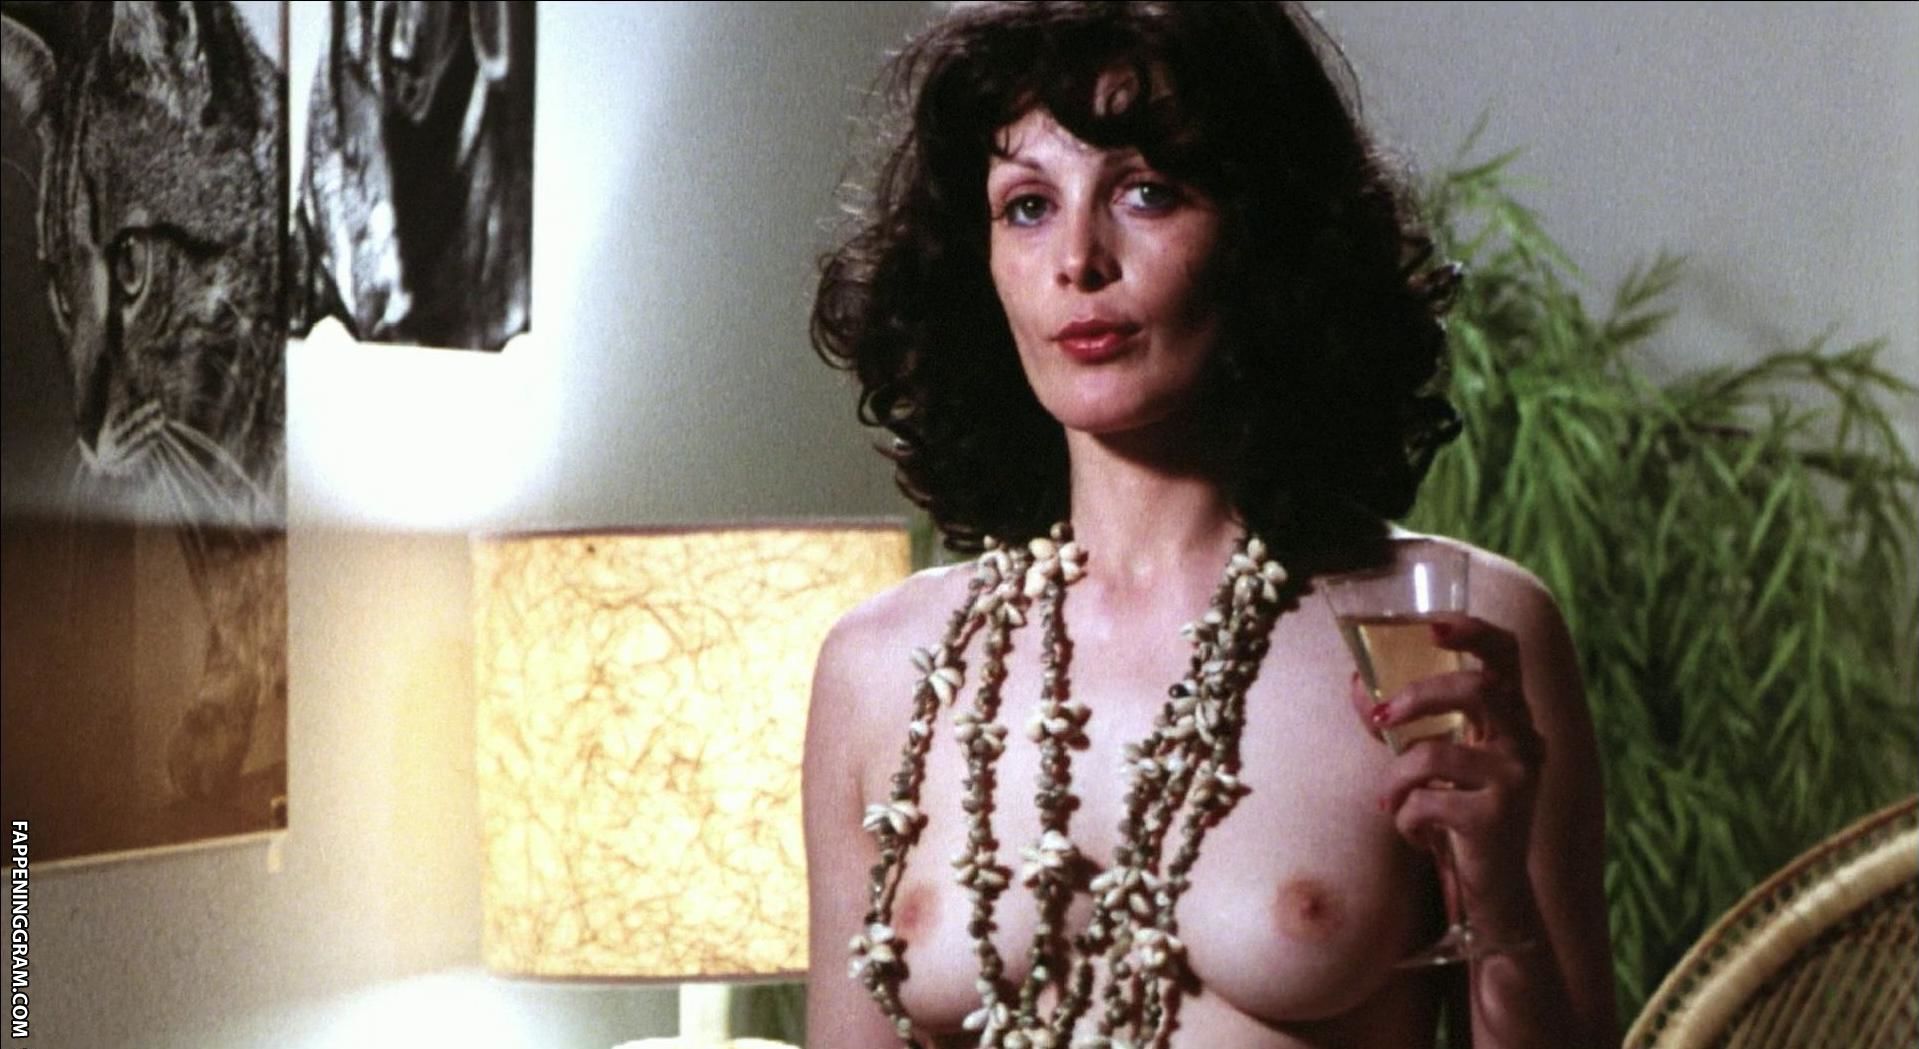 Pamela stanford nude - 🧡 Pamela Stanford nude tits and hairy bush in Terr....